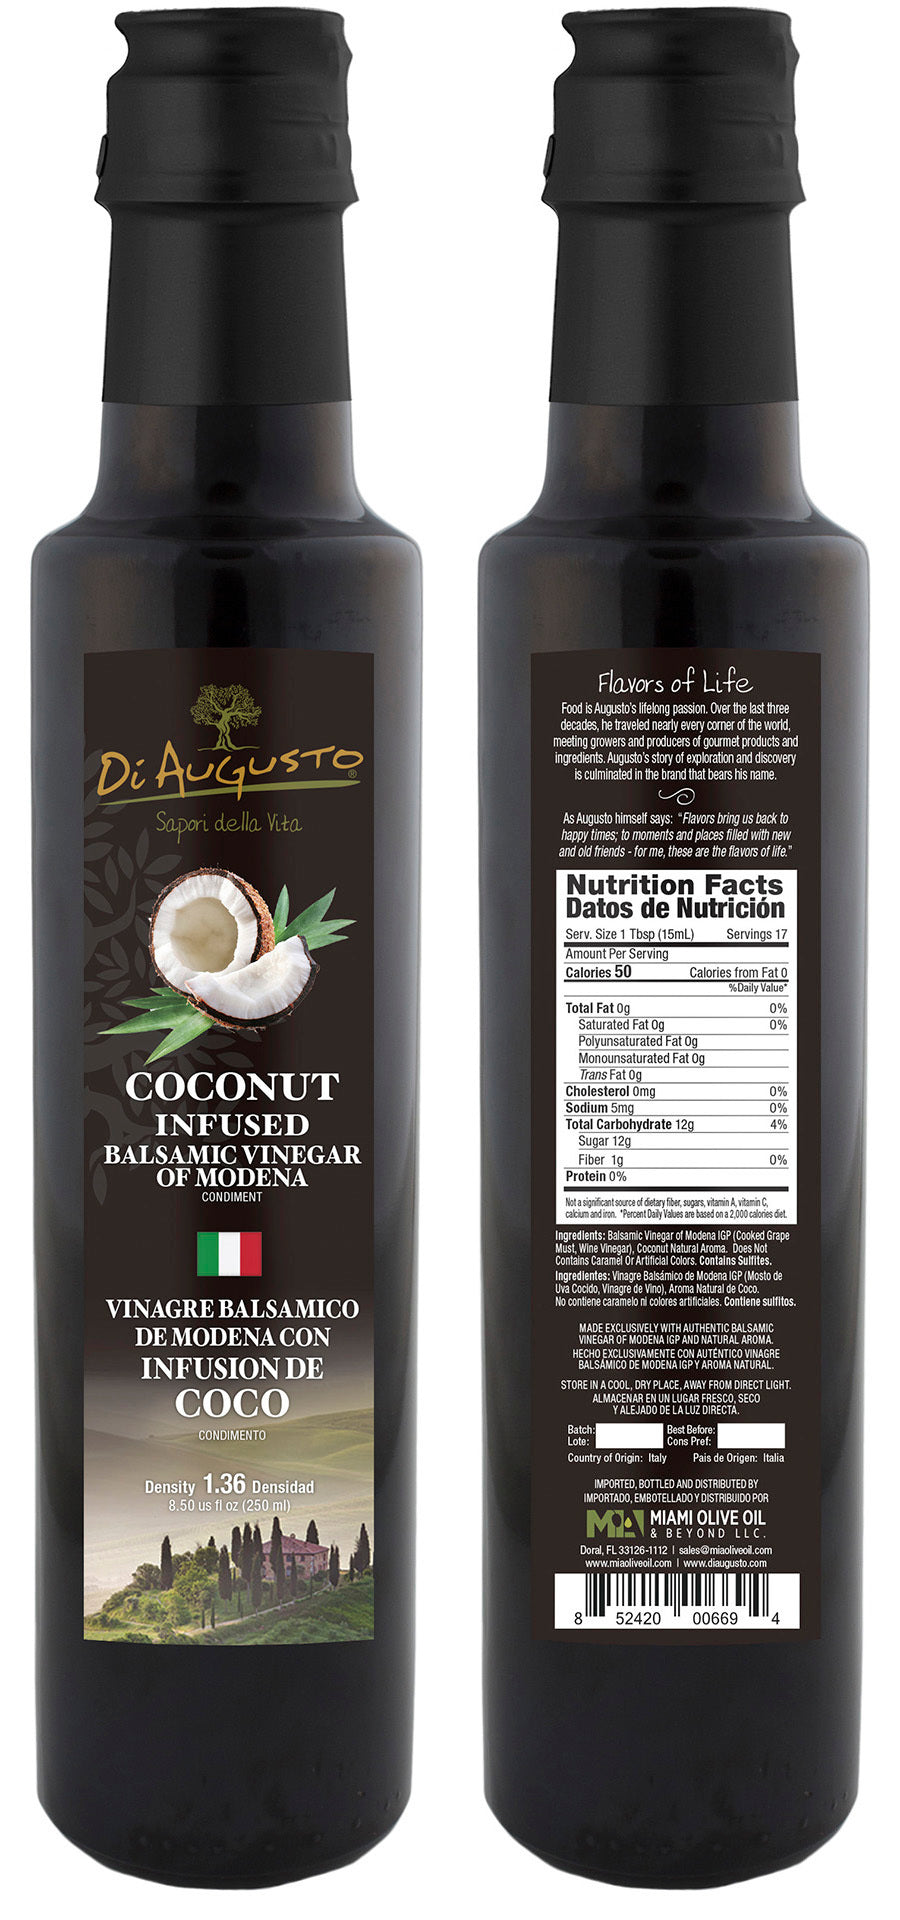 Coconut Infused Balsamic Vinegar of Modena PGI